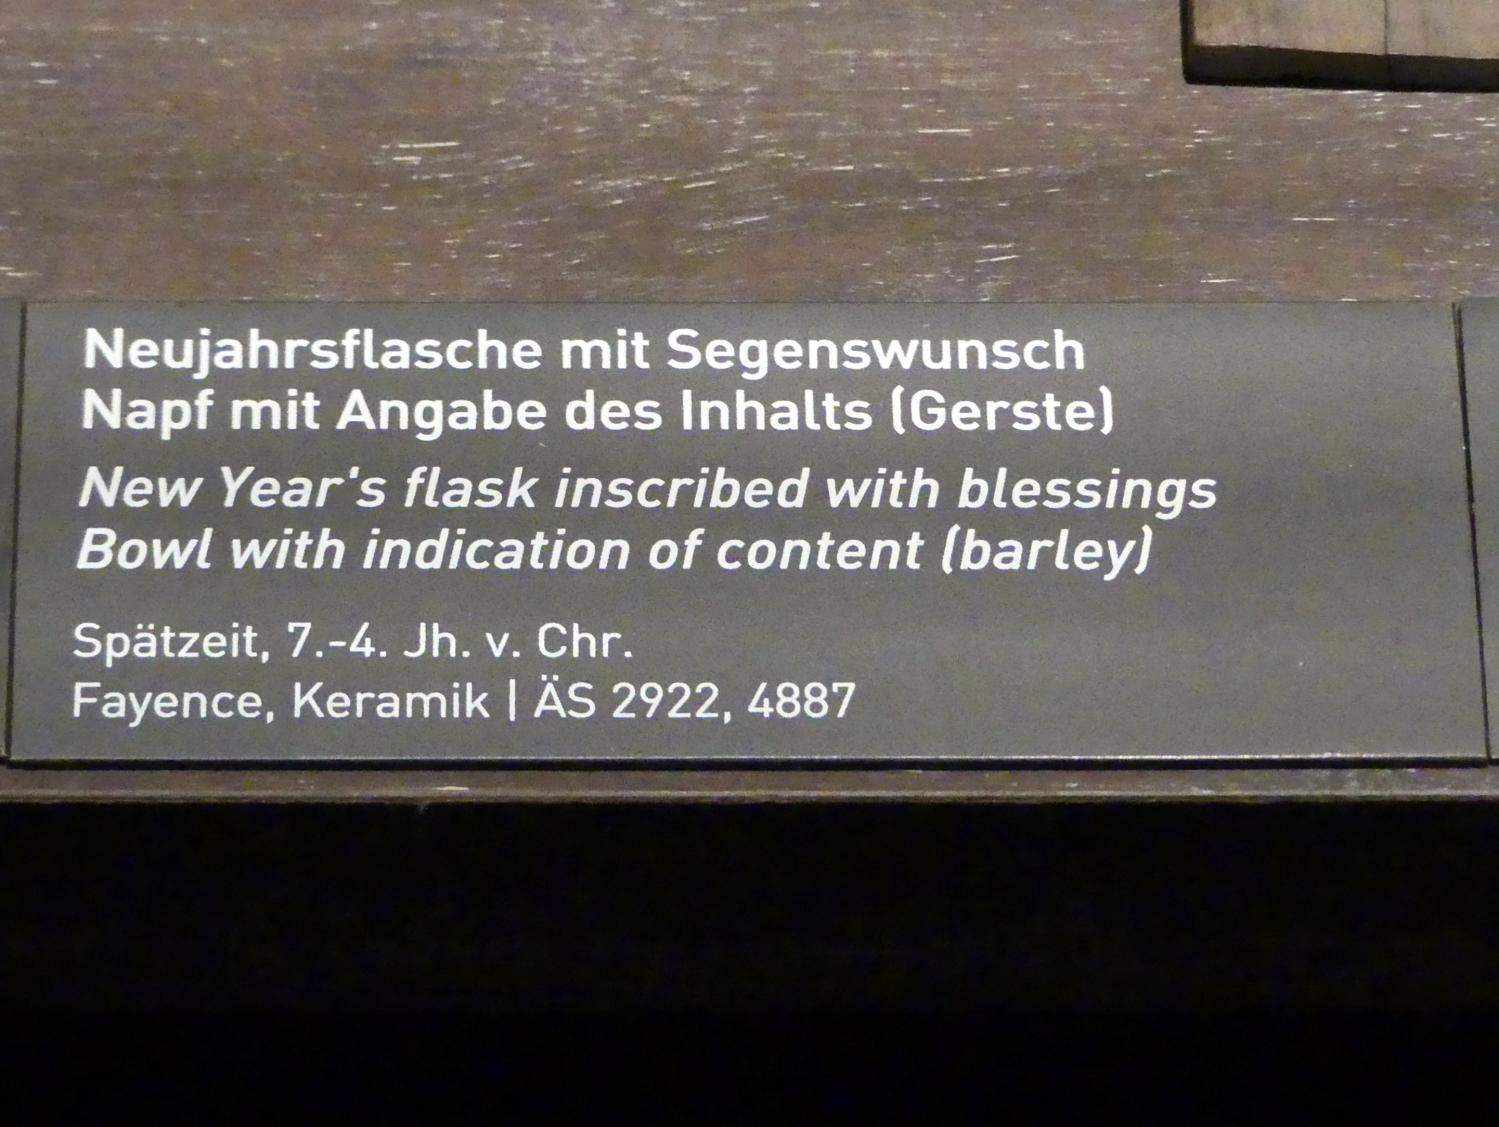 Neujahrsflasche mit Segenswunsch, Spätzeit, 360 - 342 v. Chr., 700 - 300 v. Chr., Bild 2/2